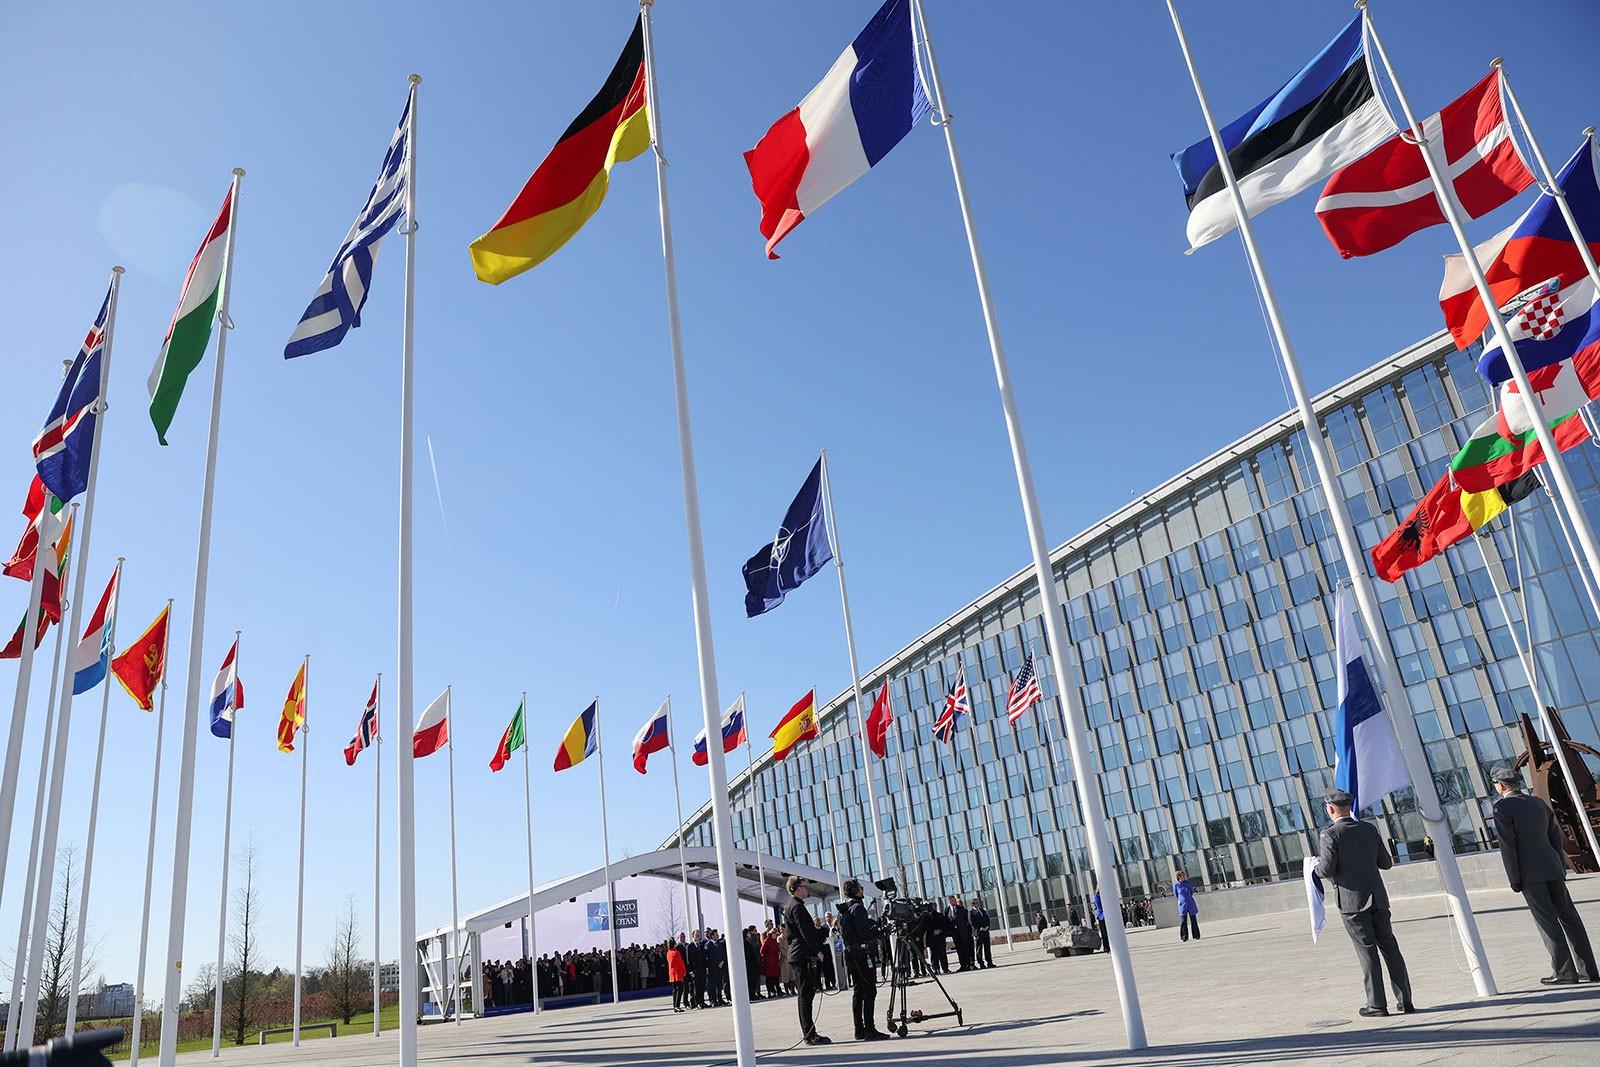 Sot nisin punimet e Asamblesë së NATO-s në Bullgari/Kosova mes temave!